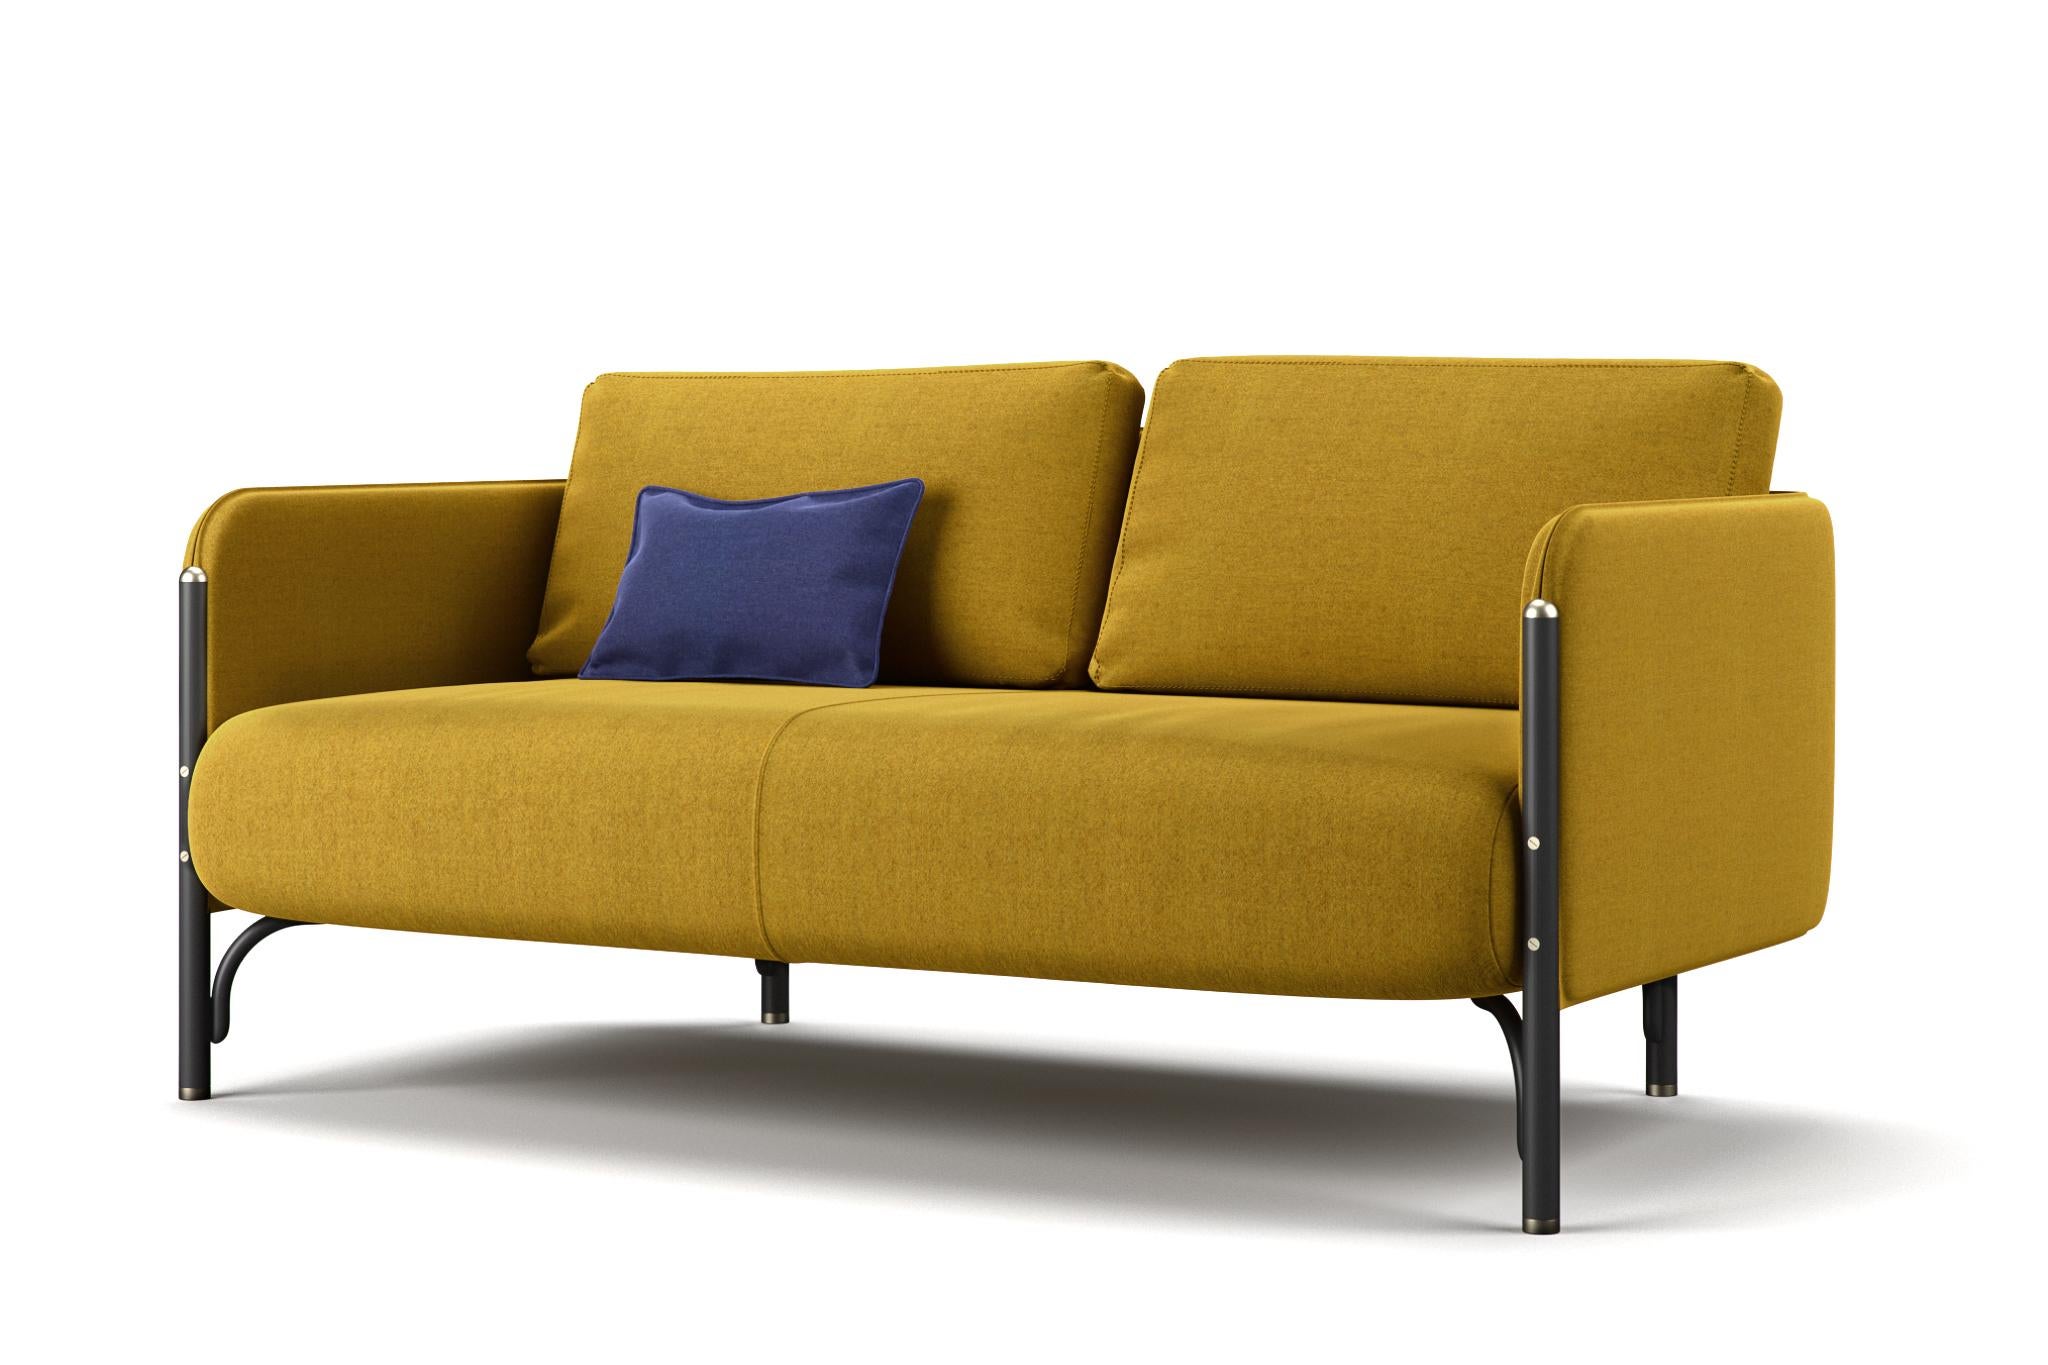 Dainelli Studio, détenu par le duo créatif de Leonardo et Marzia Dainelli, conçoit JANNIS, une collection de meubles rembourrés qui conviennent éminemment à un usage professionnel.

Canapé et fauteuil de salon à deux et trois places, avec des